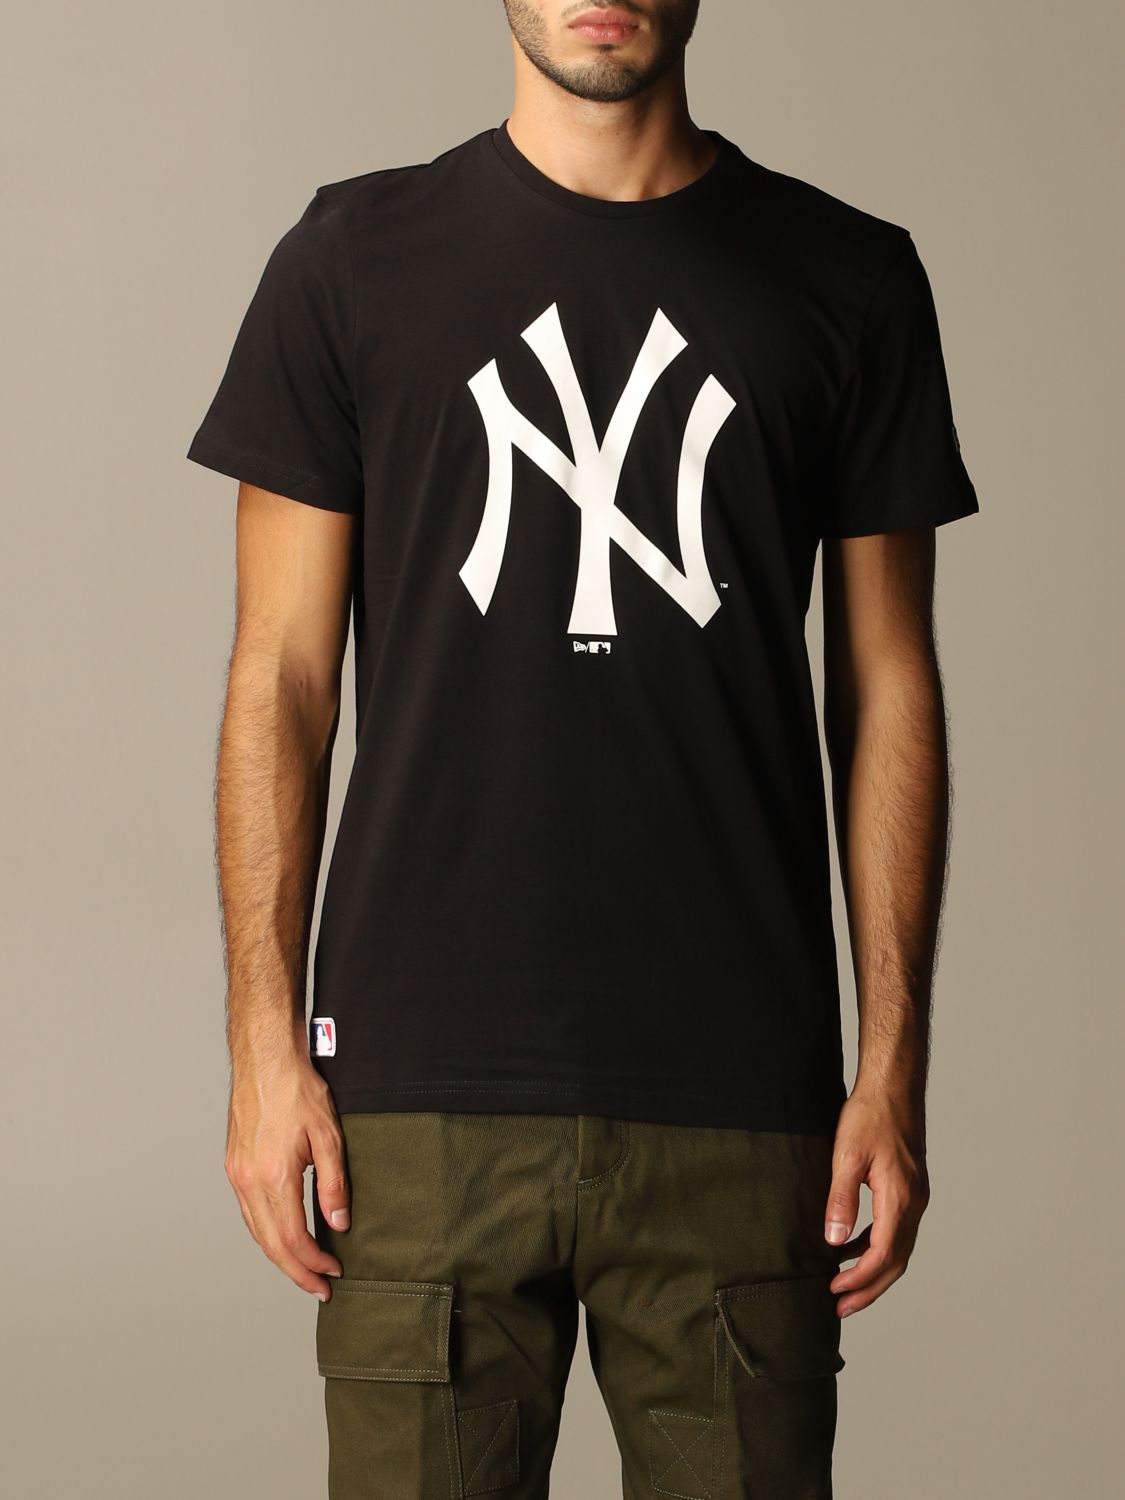 new-era-t-shirt-for-men-black-new-era-t-shirt-11863697-online-on